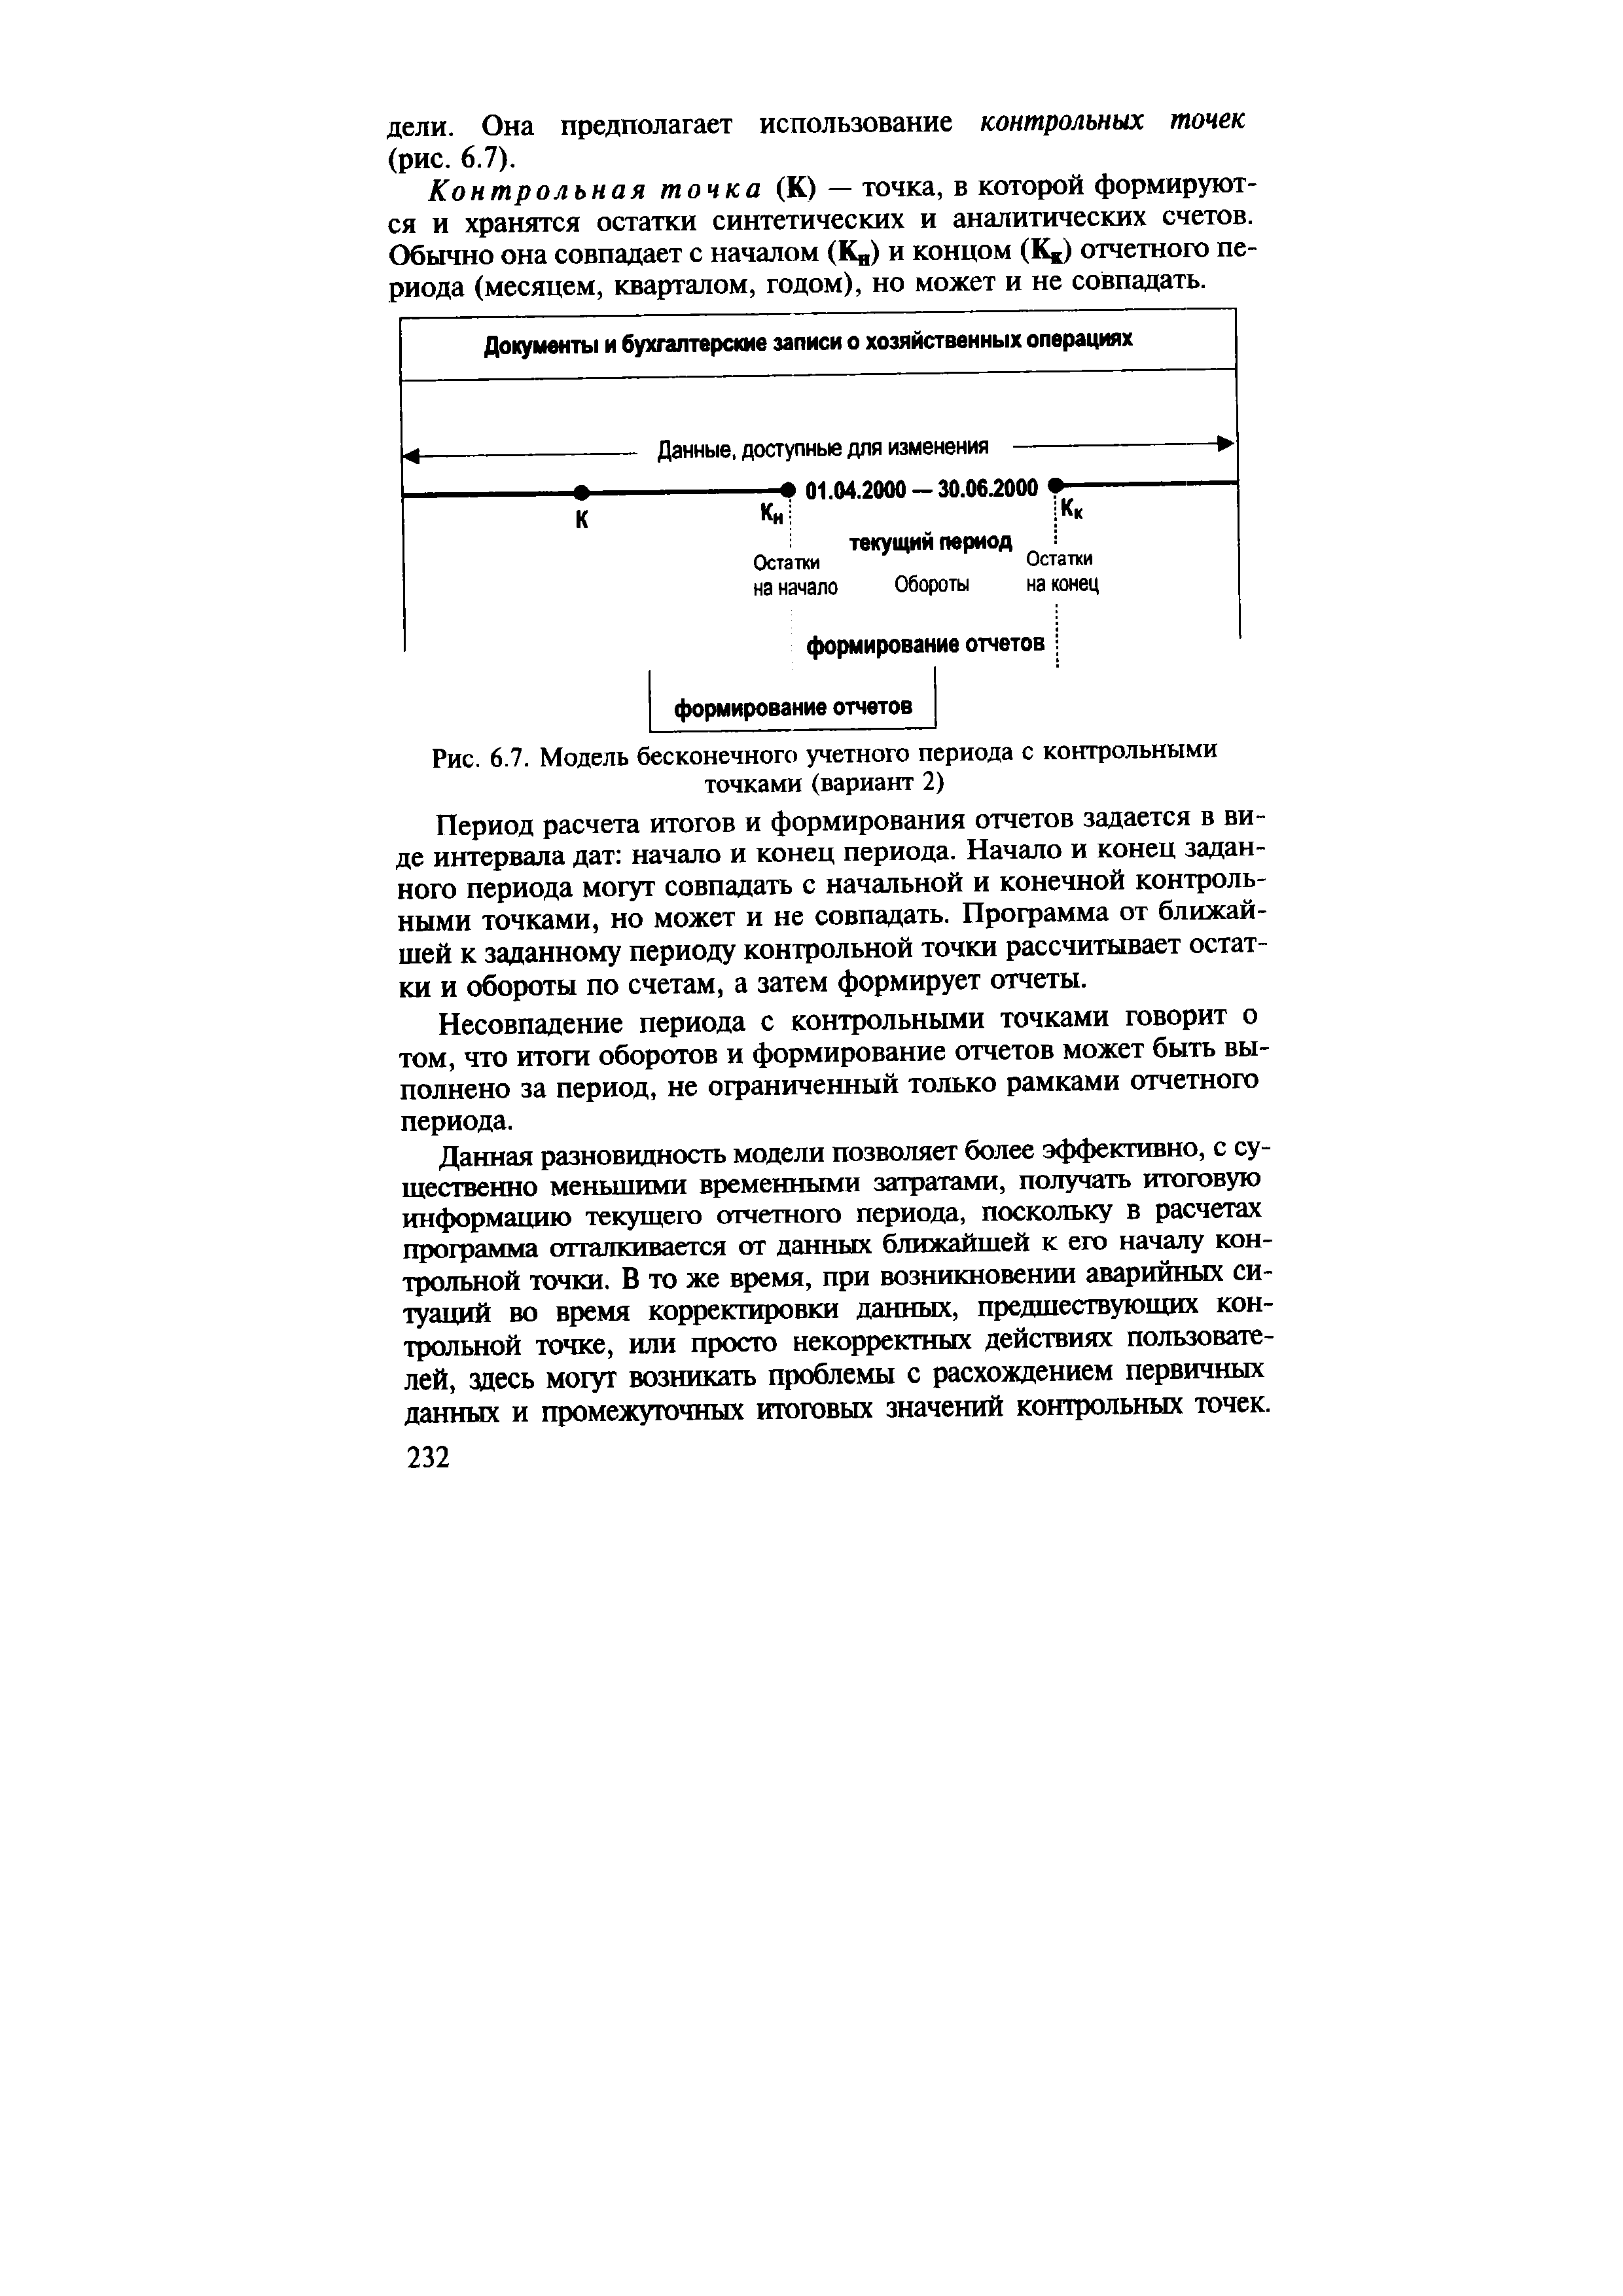 Рис. 6.7. Модель бесконечного учетного периода с контрольными точками (вариант 2)
